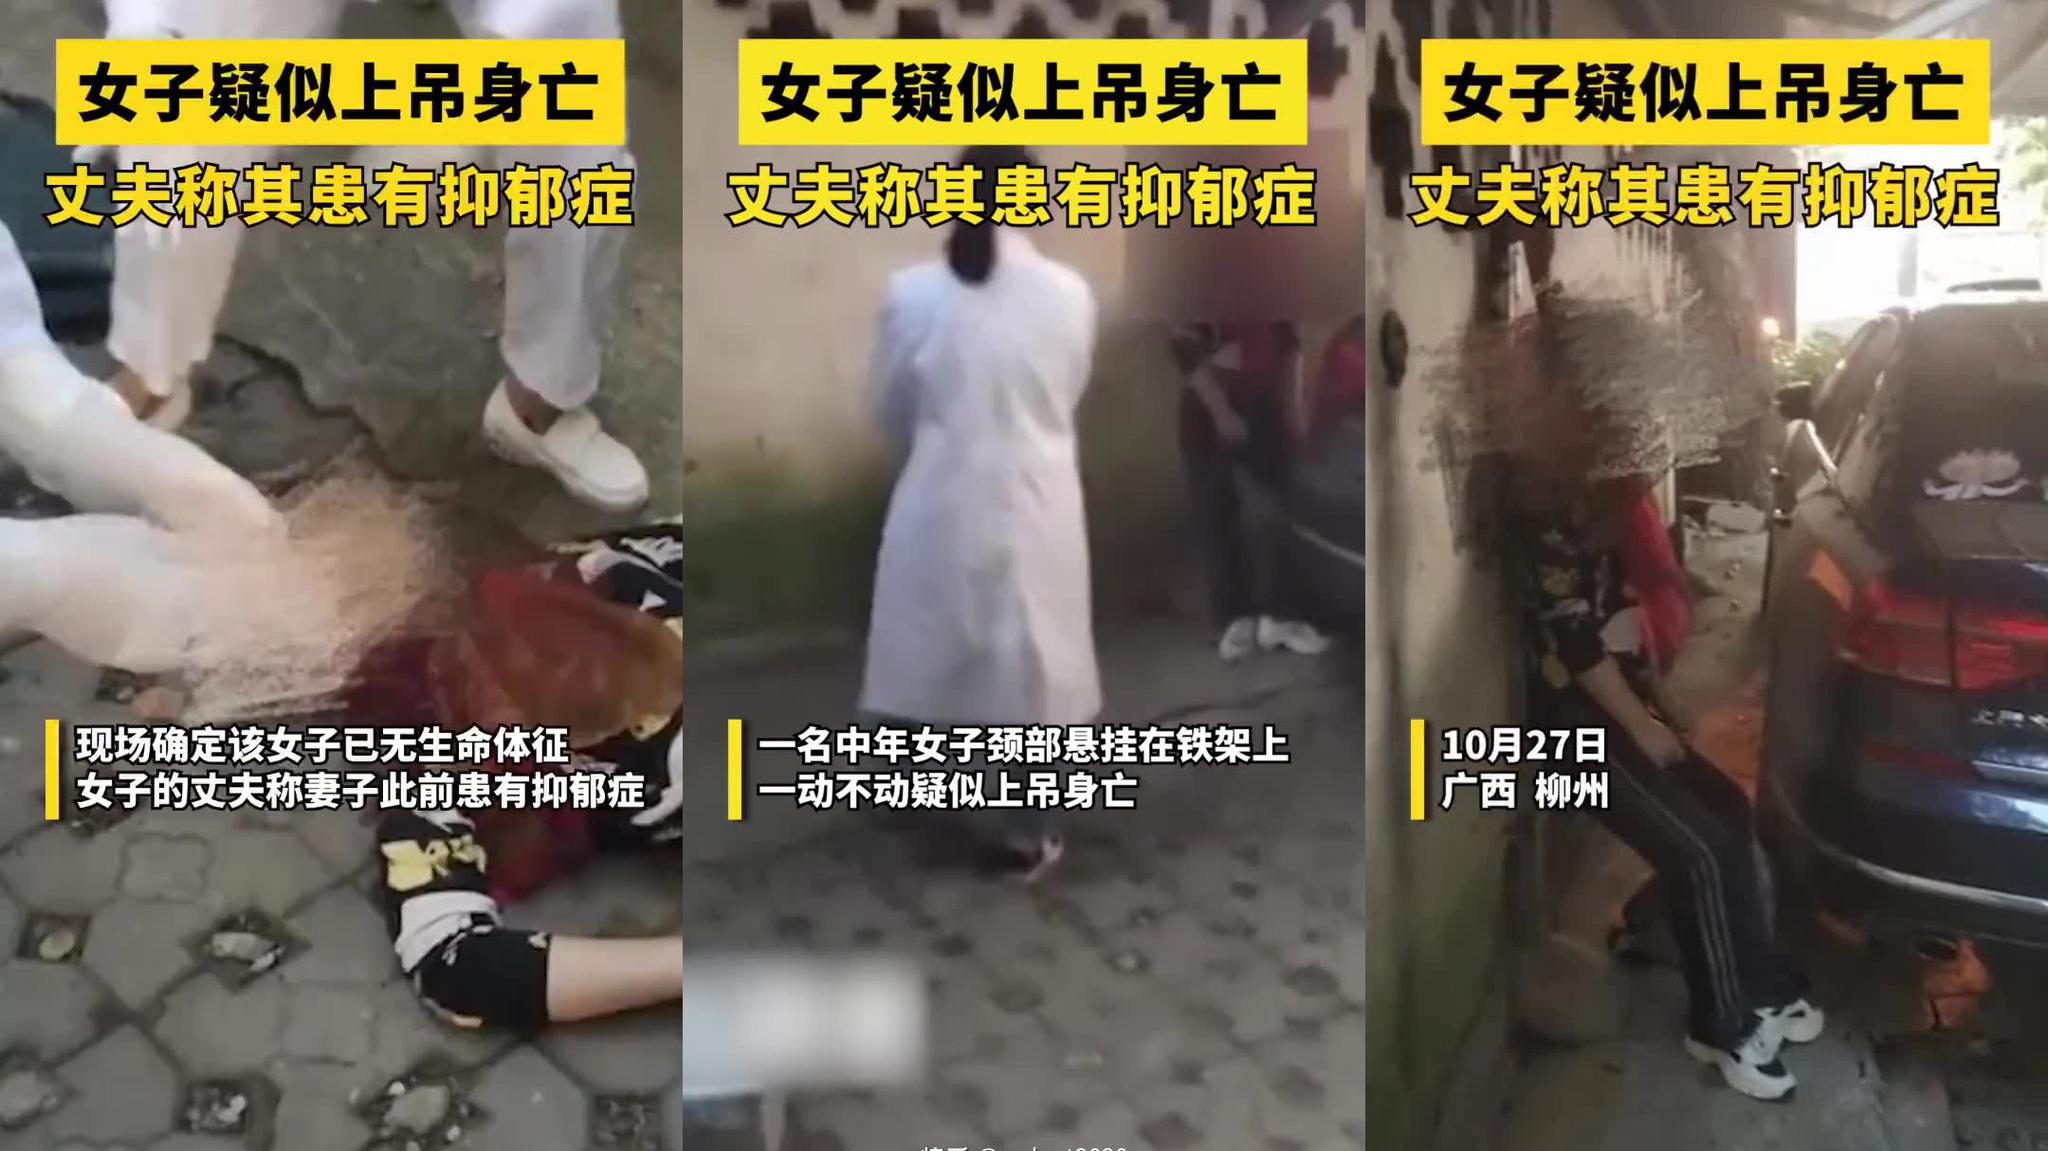 10月27日,广西柳州某小区一女子疑似上吊身亡